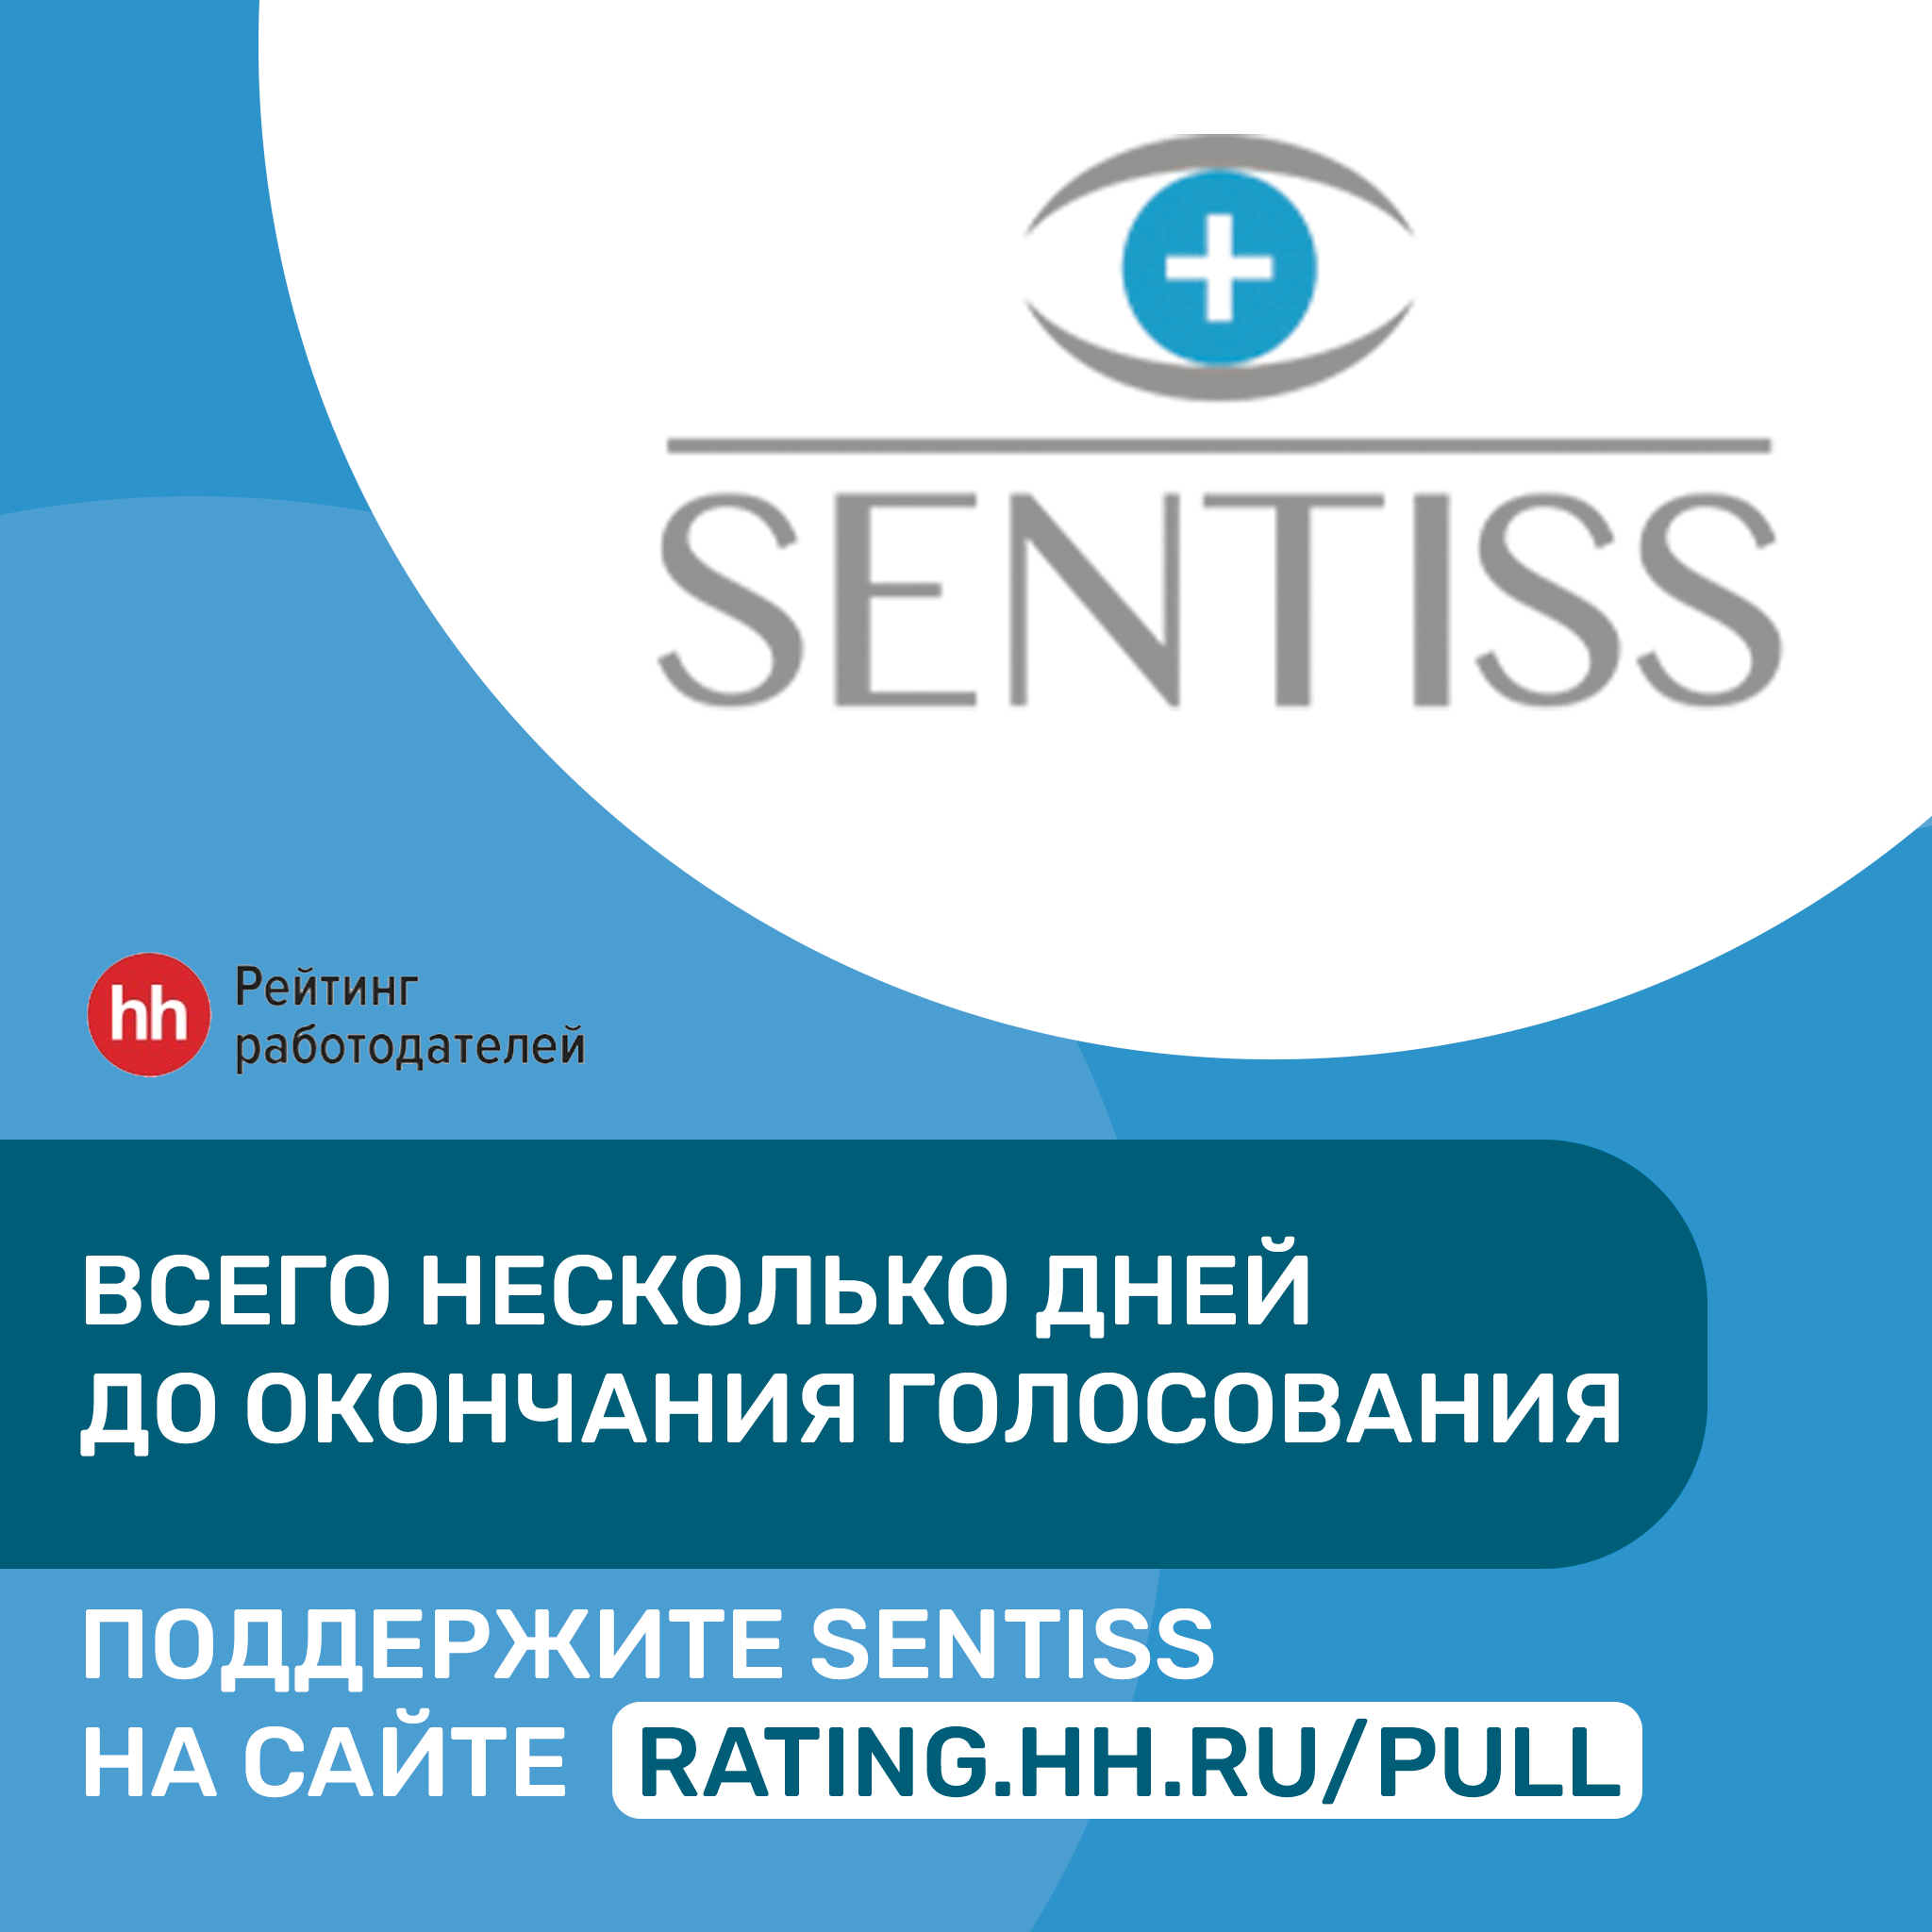 31 октября завершается опрос "Рейтинг работодателей России"